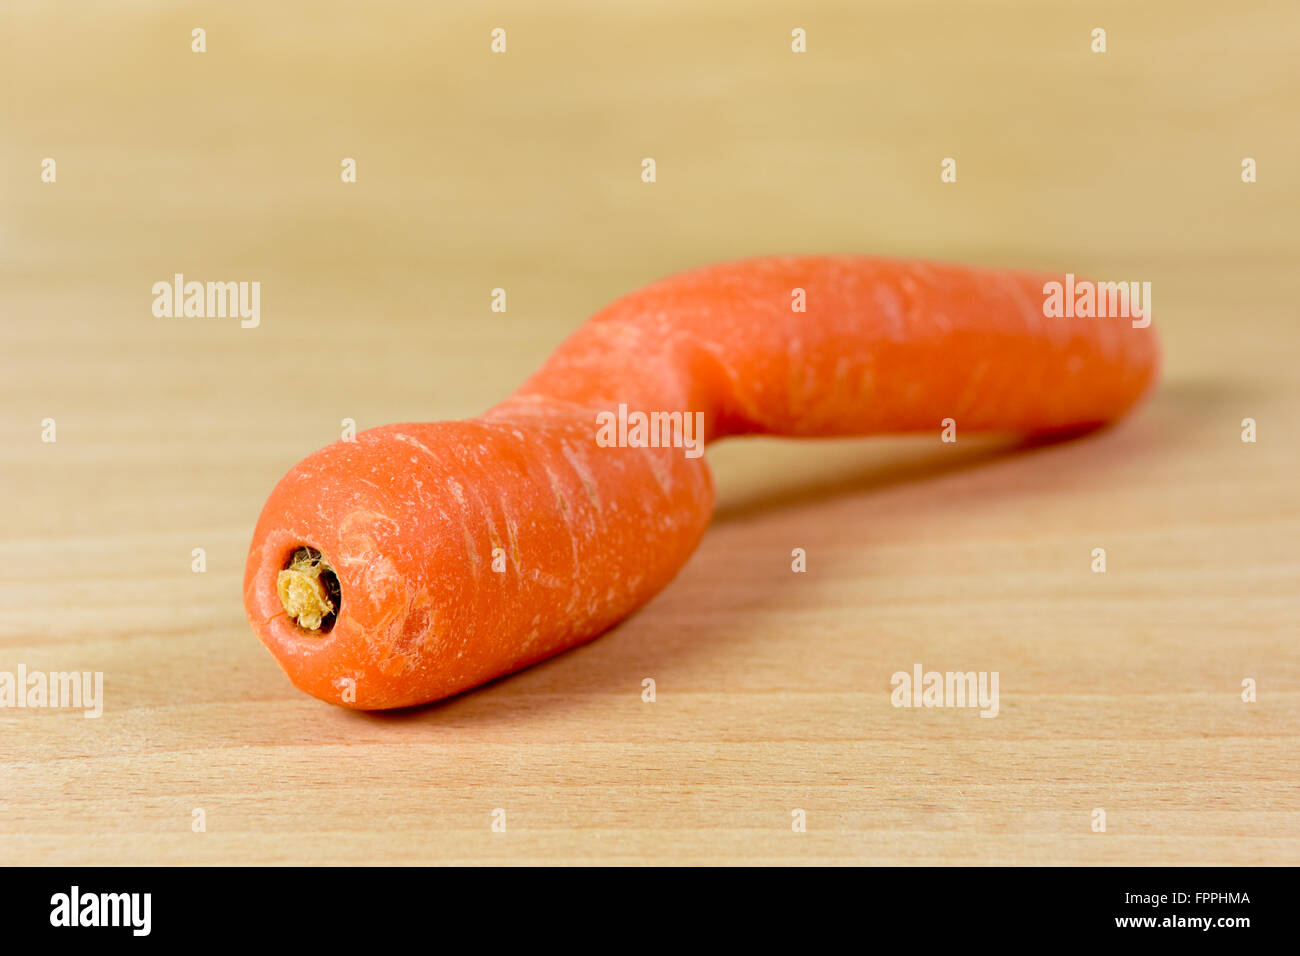 Deformato e deformato la carota sul tagliere Foto Stock